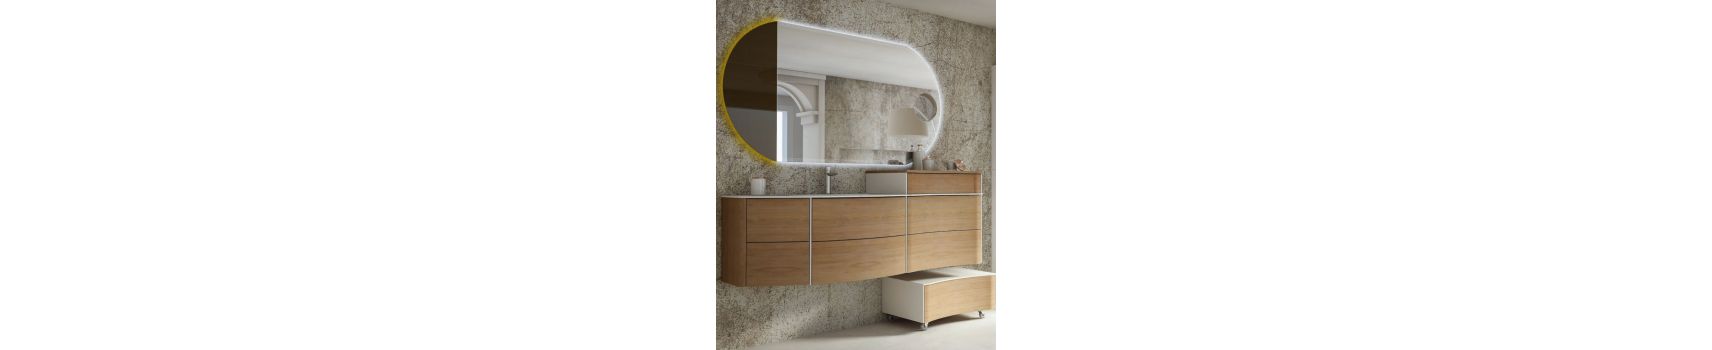 Mobili bagno moderni e classici Made in Italy | Boleco